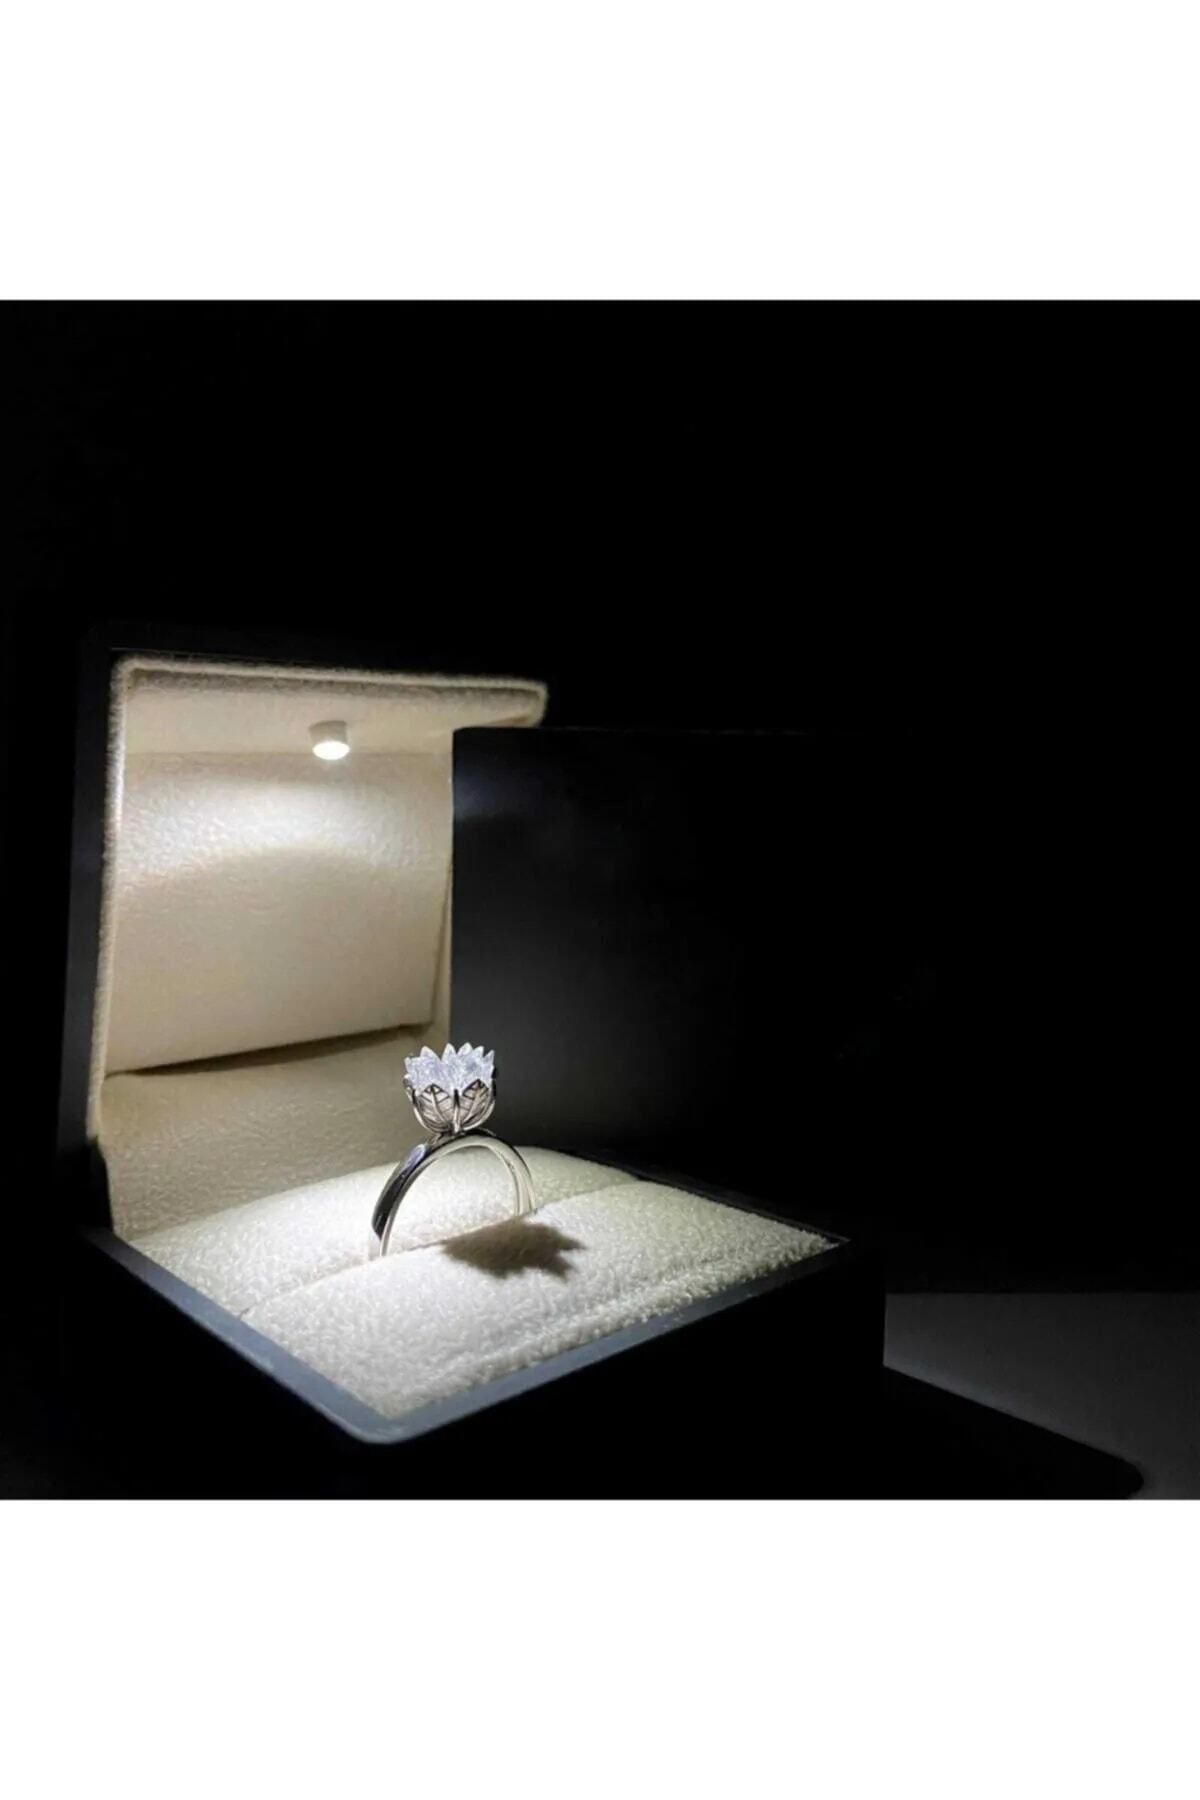 LOTUS JEWELLERY Lotus Çiçeği Yüzük & Işıklı Yüzük Kutusu - 925 Ayar Gümüş Yüzük